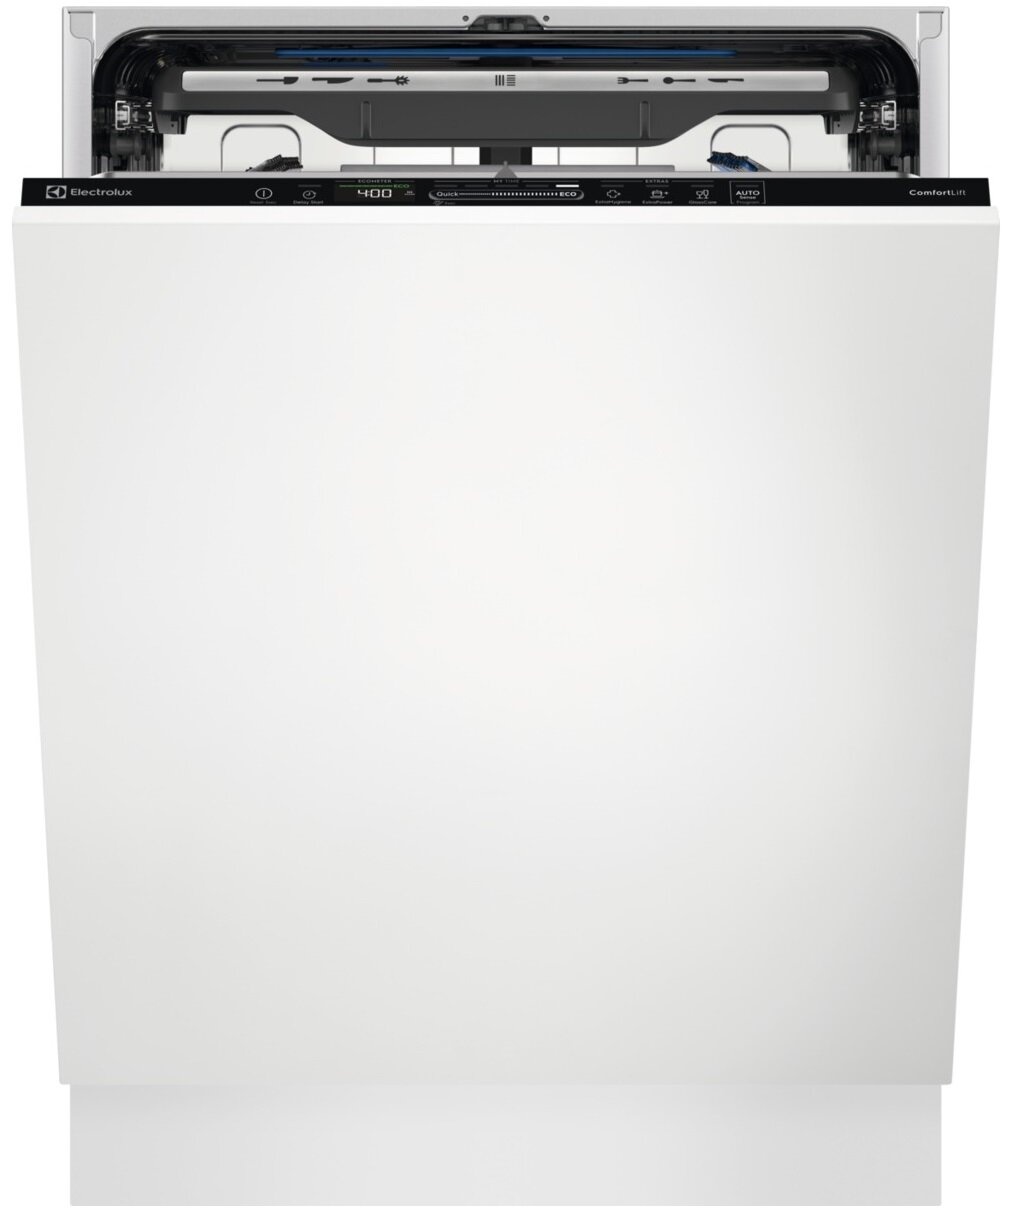 Встраиваемая посудомоечная машина Electrolux KECB7310L